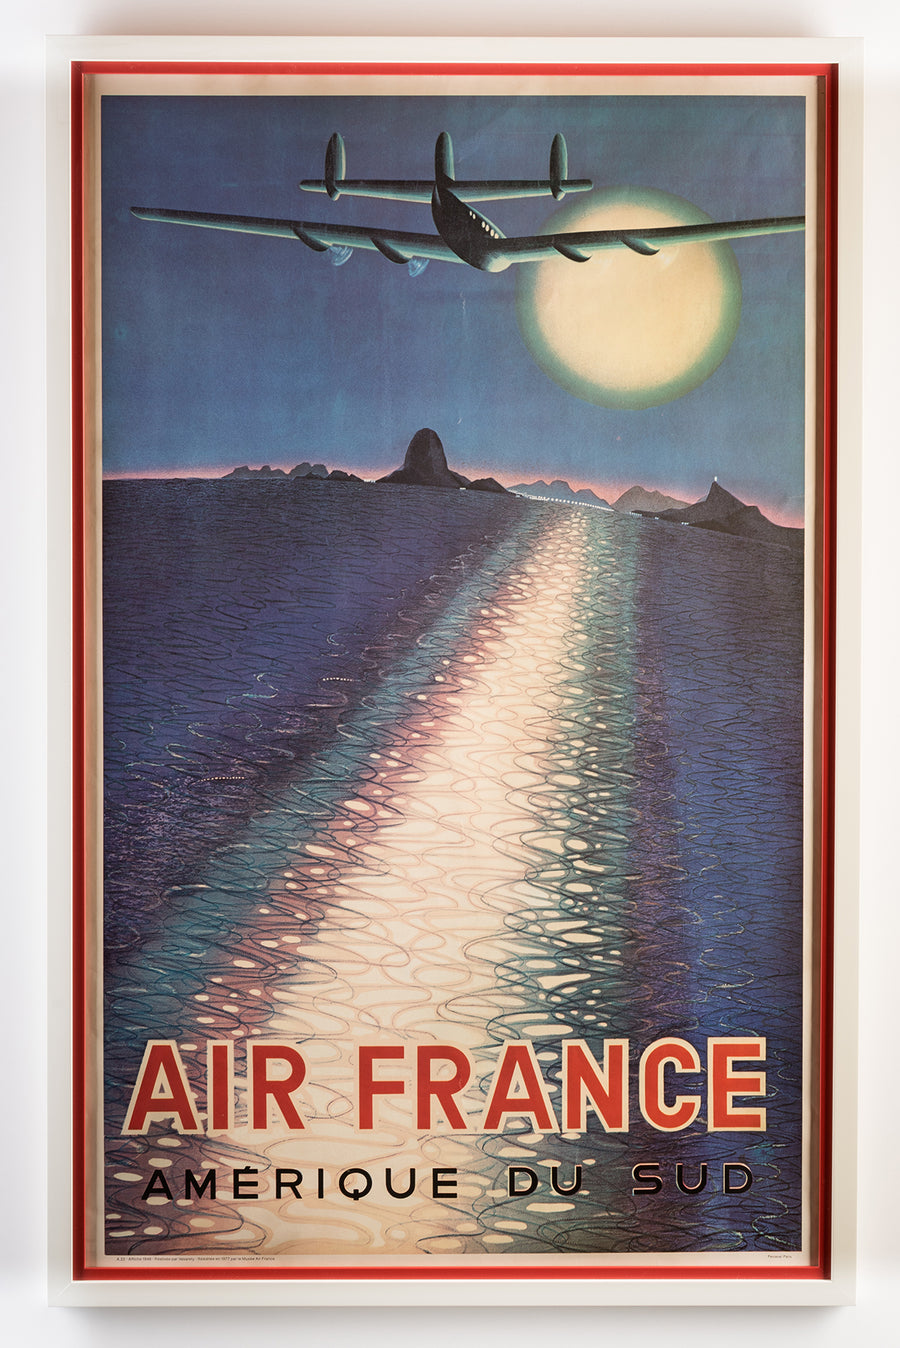 AIR FRANCE - AMÉRIQUE DU SUD ( 68 x 106 x 2 cm )